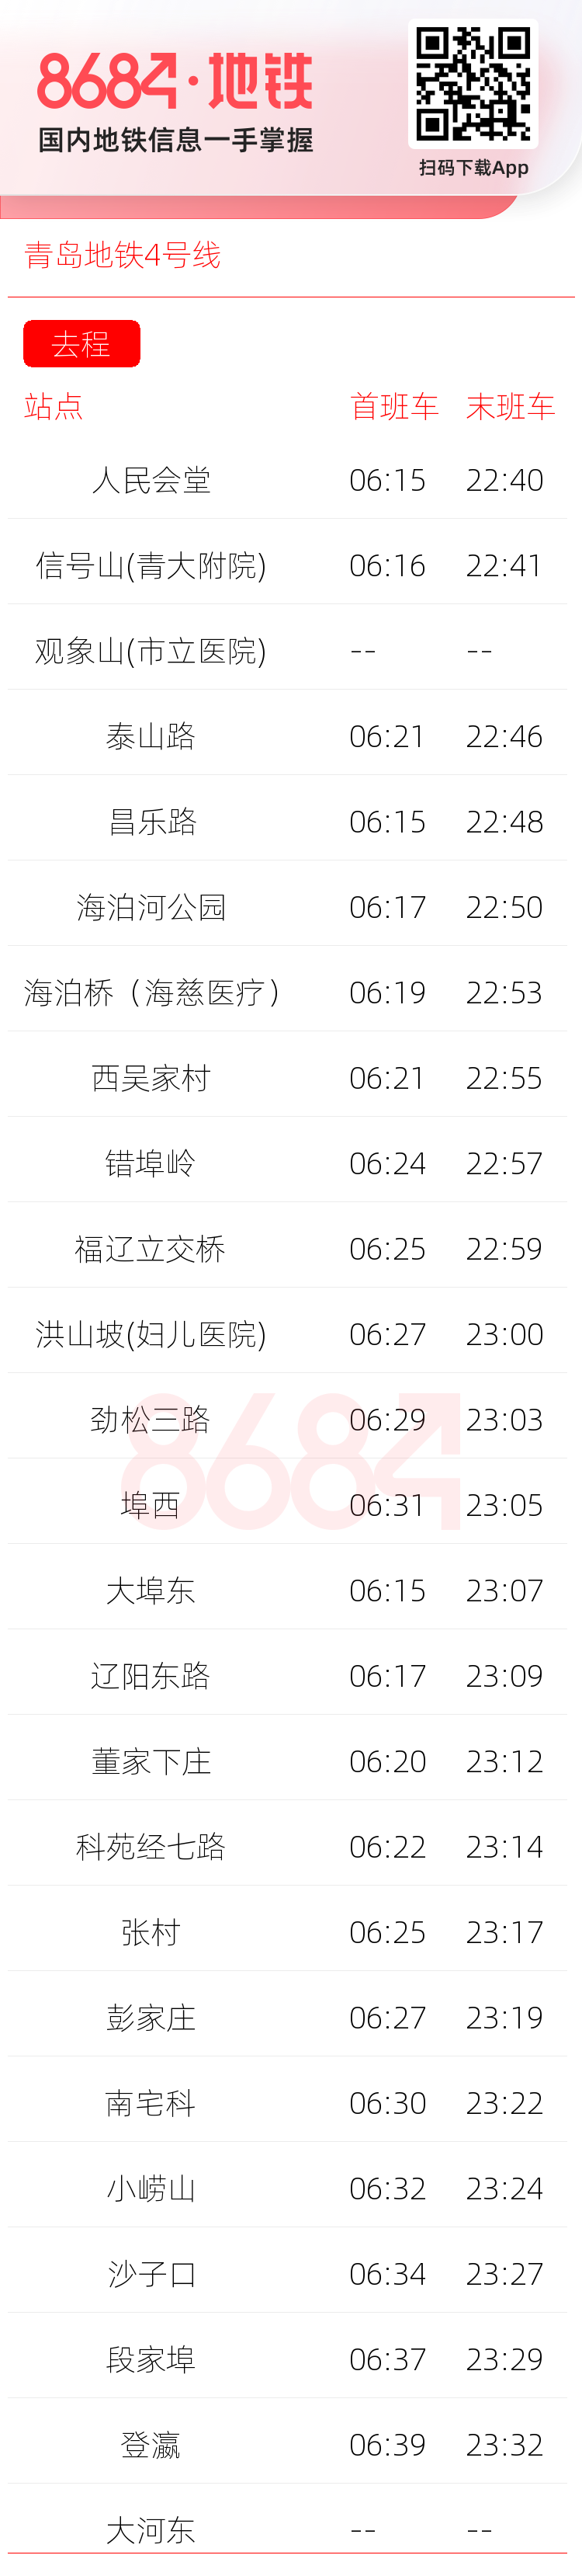 青岛地铁4号线运营时间表